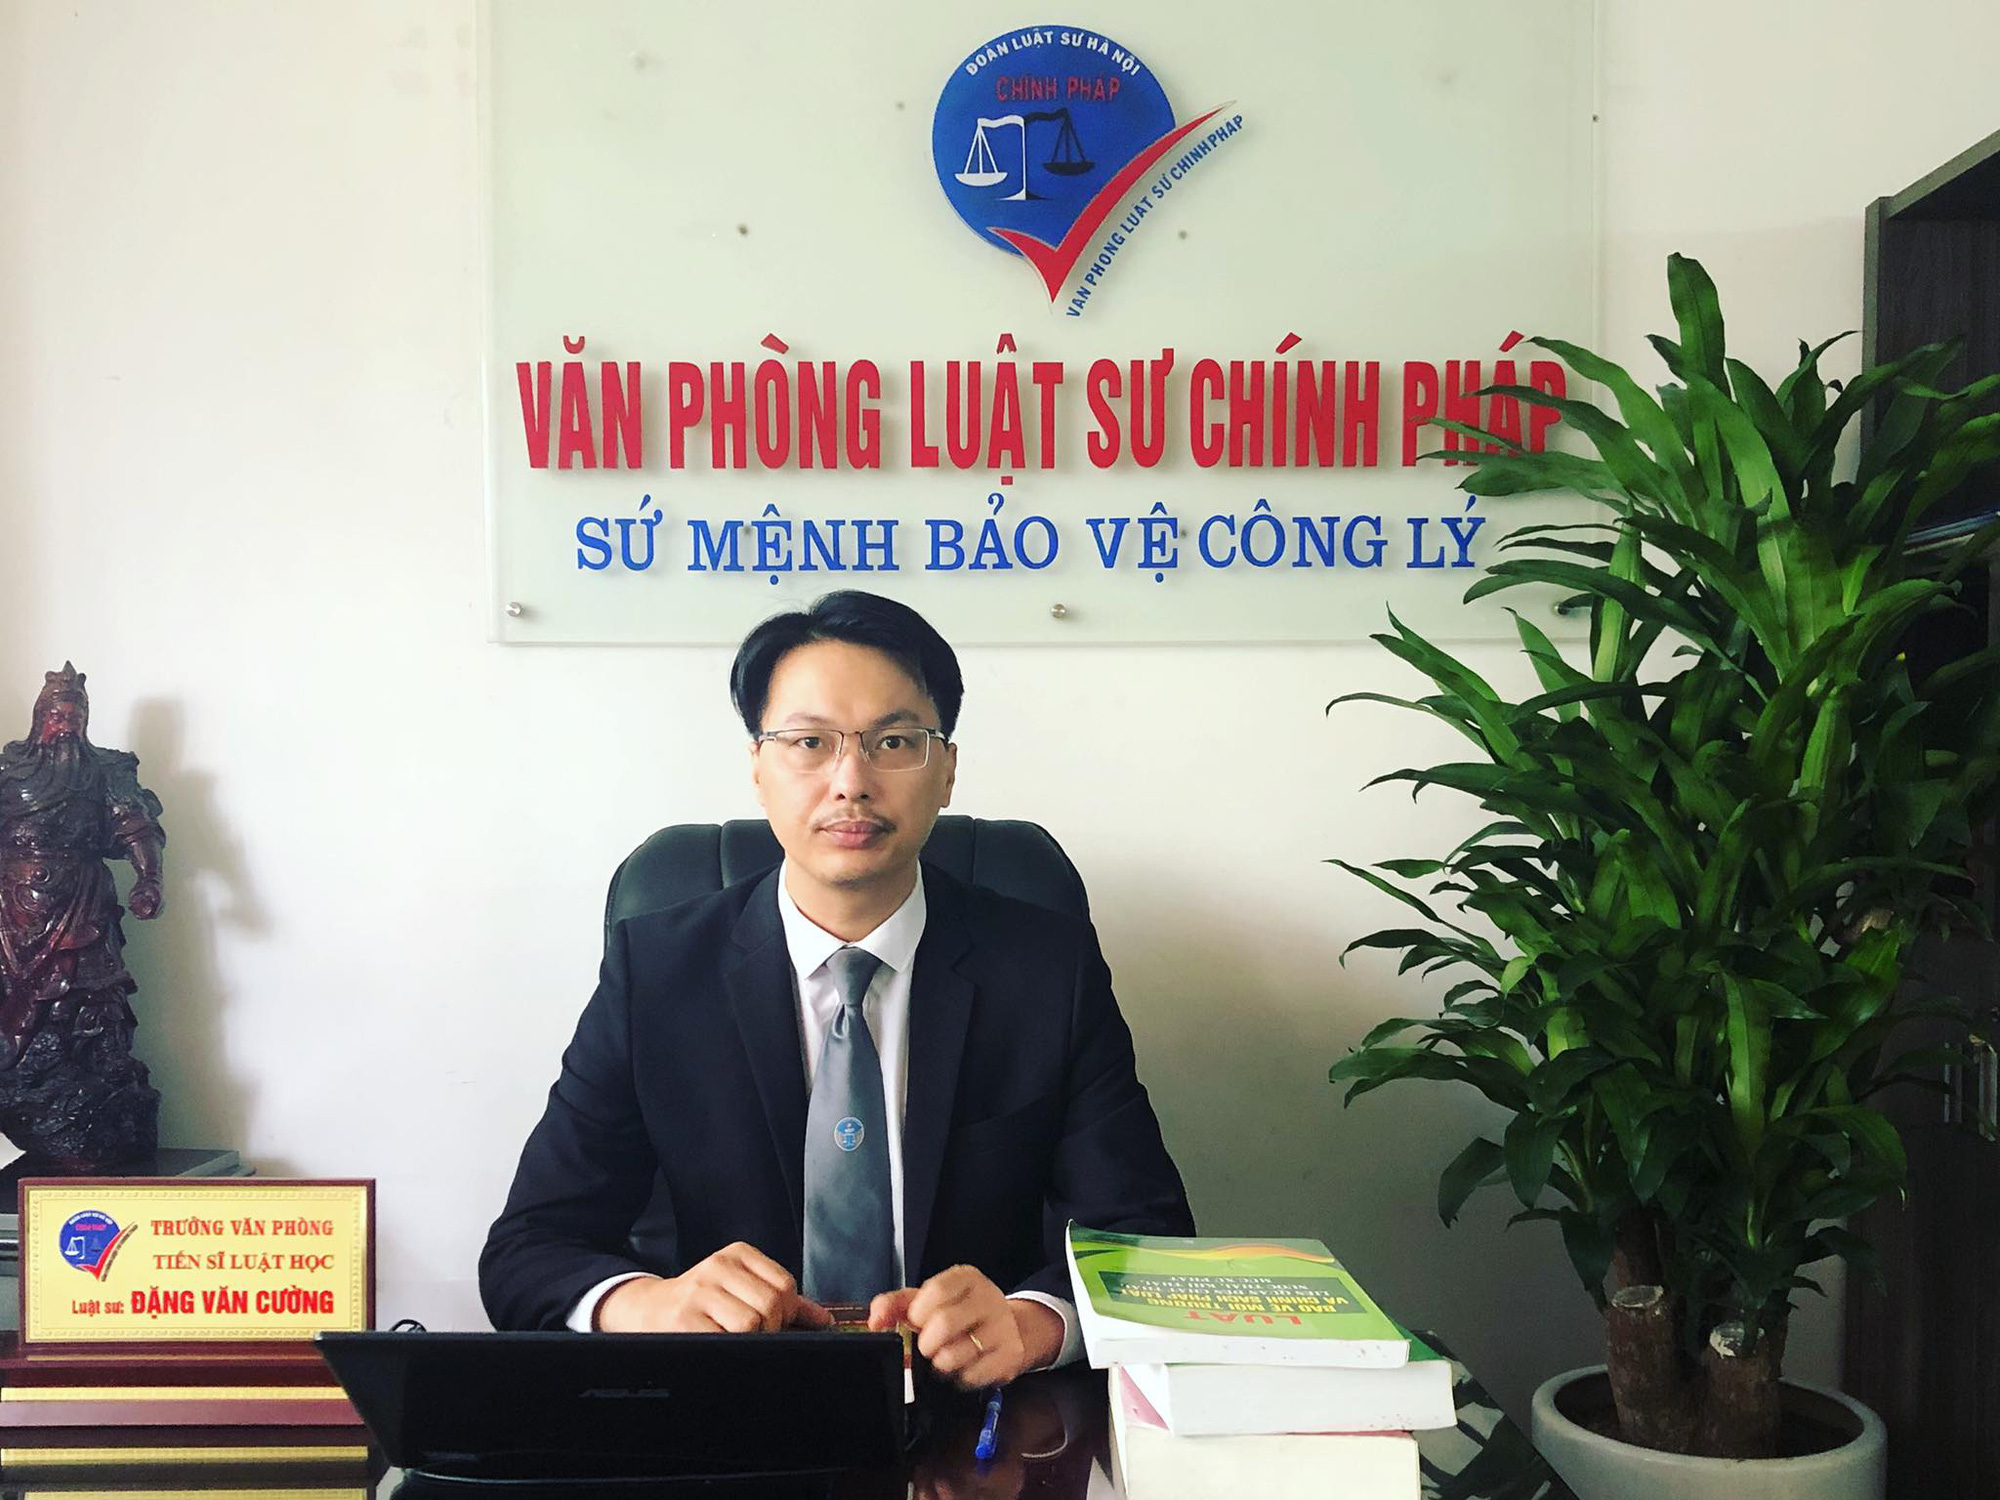 Luật sư phân tích căn cứ pháp lý trong vụ Giám đốc doanh nghiệp tự tử tại tòa ở Đà Nẵng - Ảnh 3.